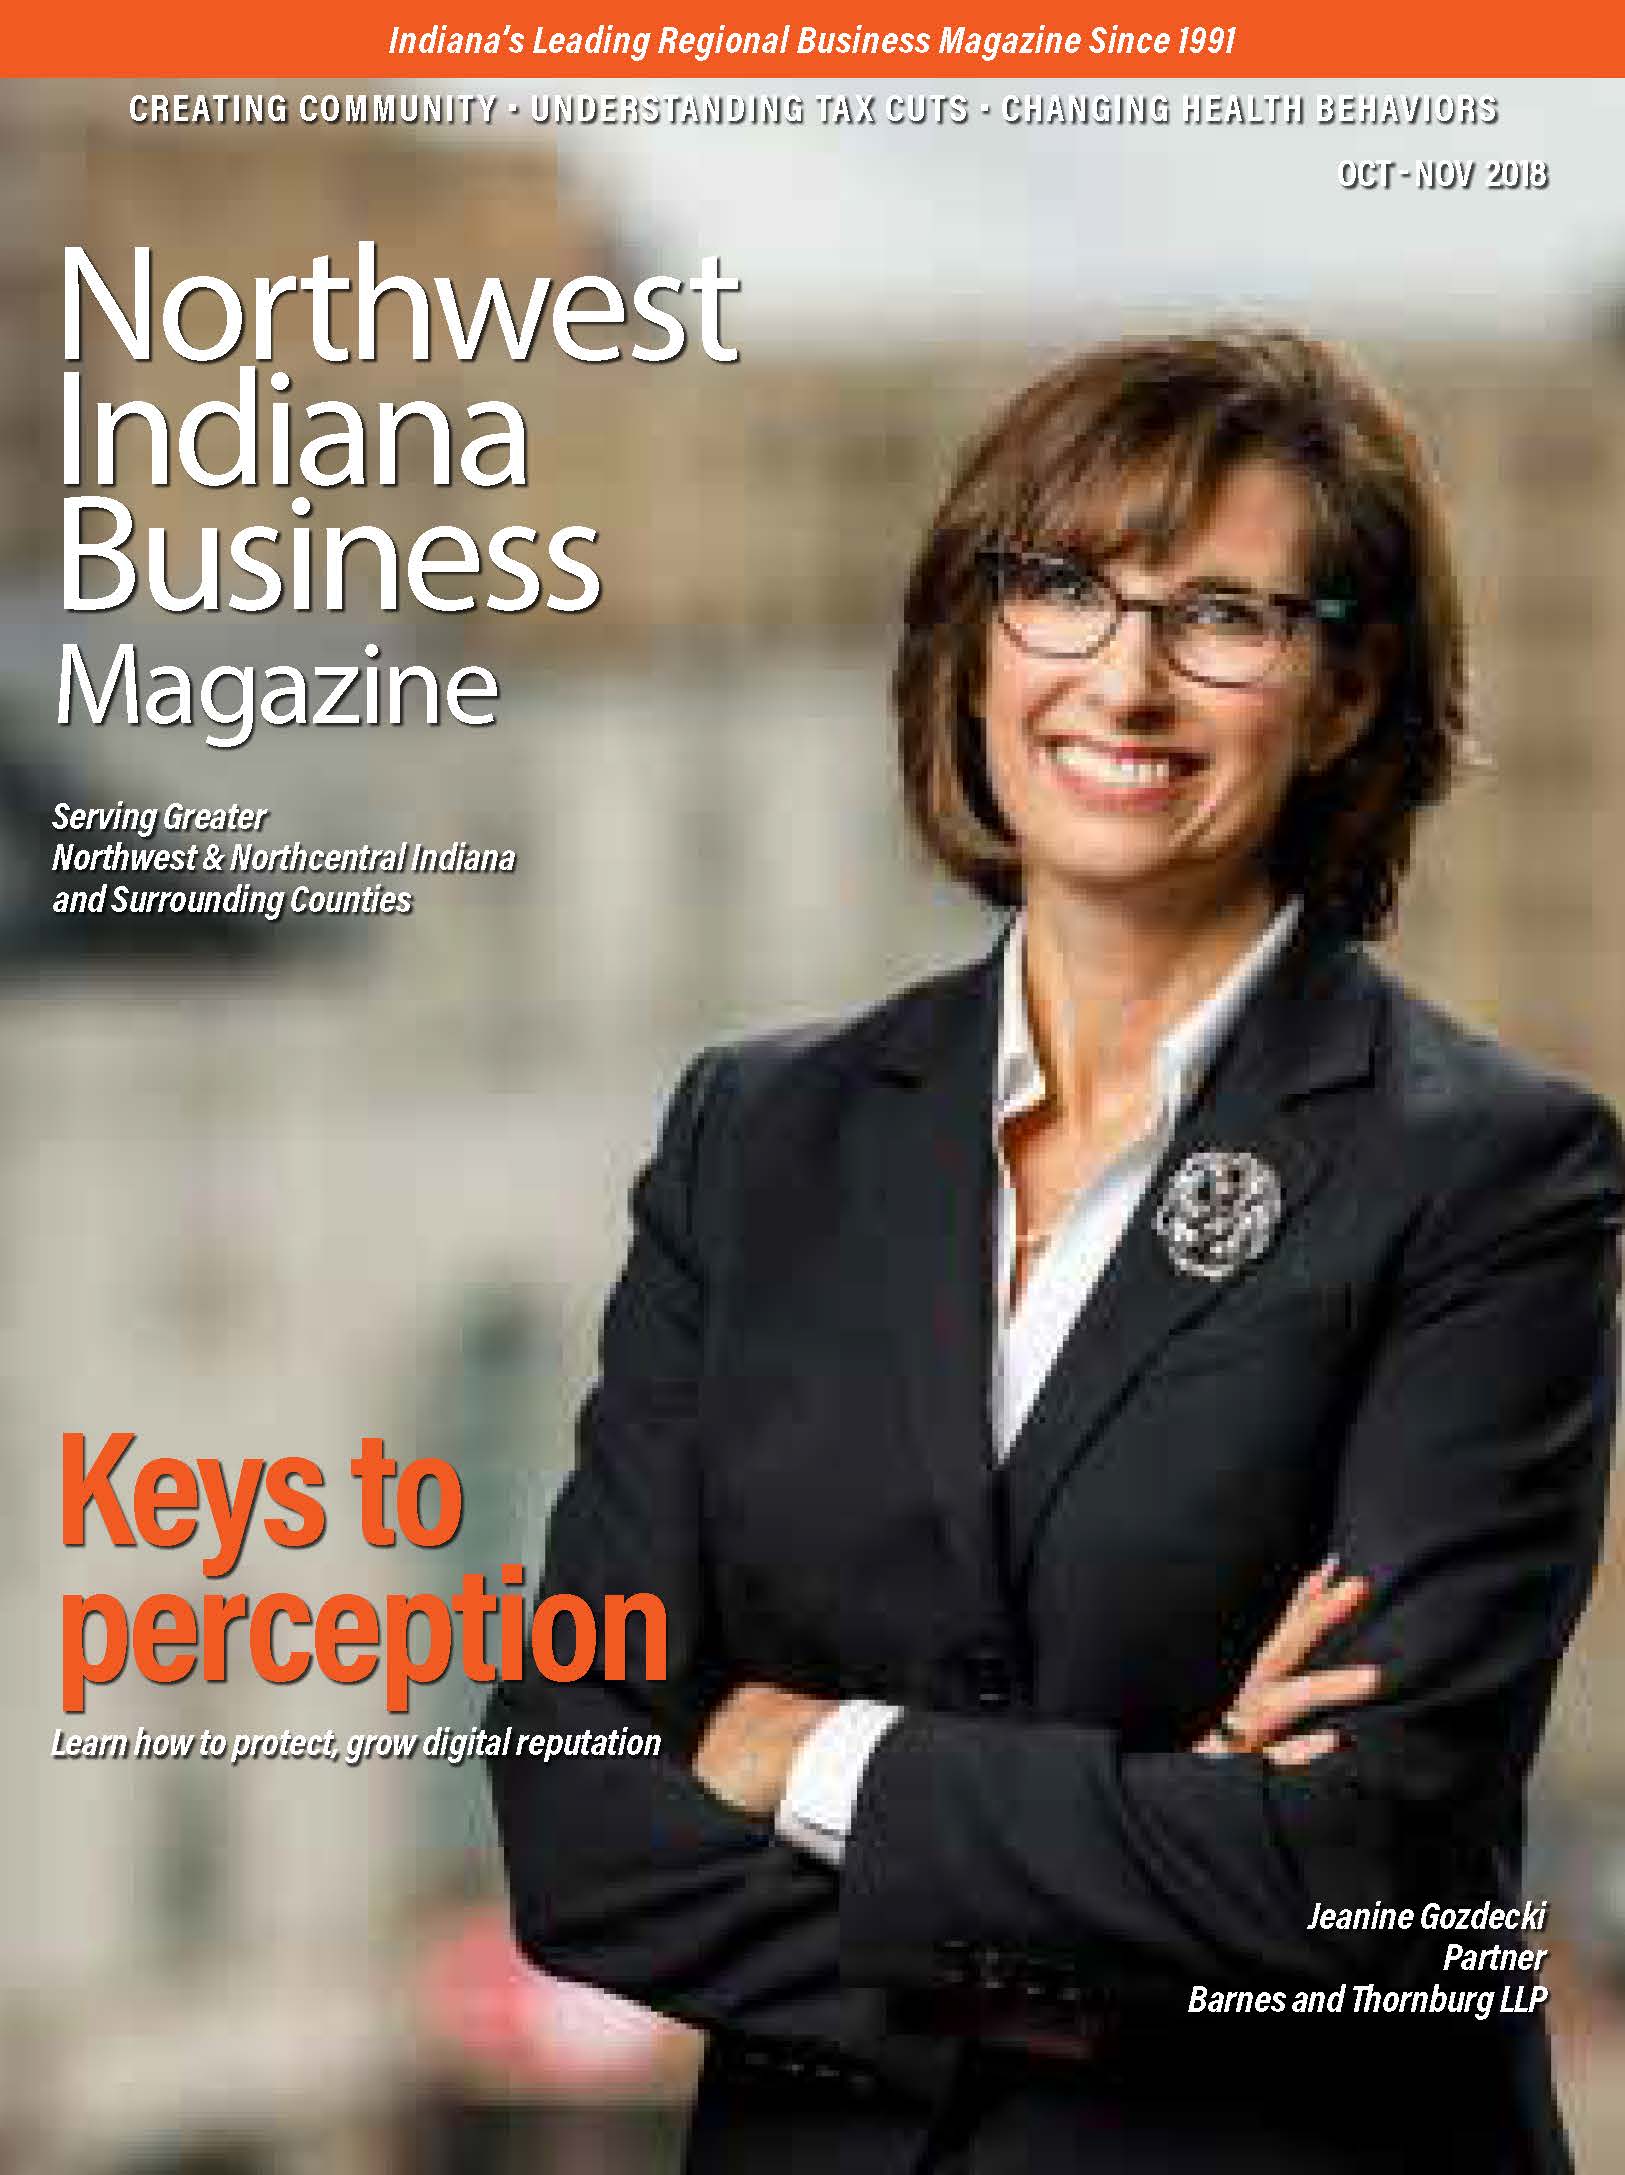 Northwest Indiana Business Magazine - Oct-Nov 2018 issue